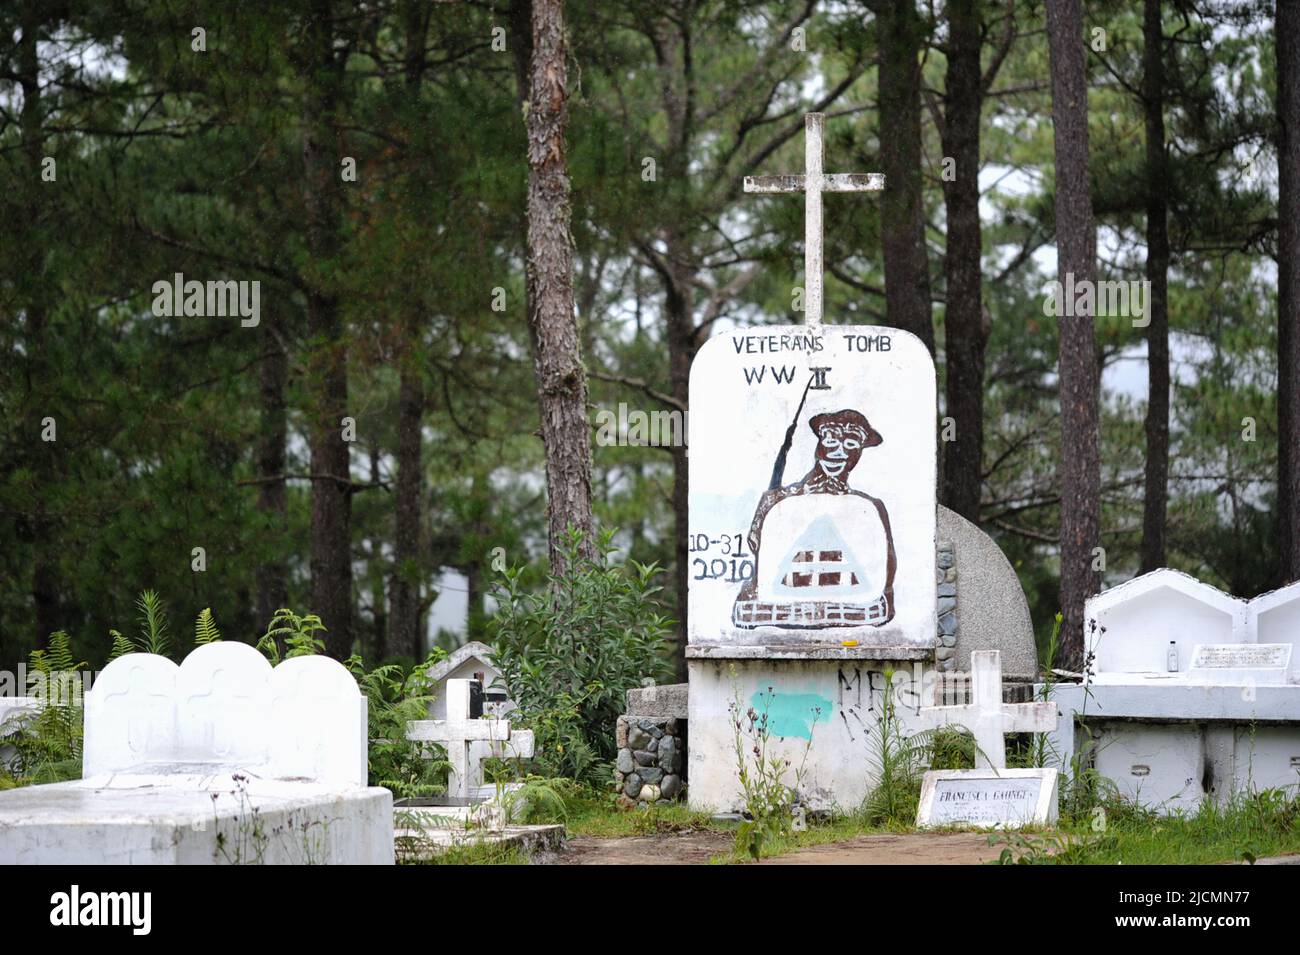 Province de montagne, Philippines : tombe des anciens combattants de la Seconde Guerre mondiale dans le cimetière de Calvary Hill, où les habitants de Sagada enterrent leurs morts de manière ordonnée. Banque D'Images